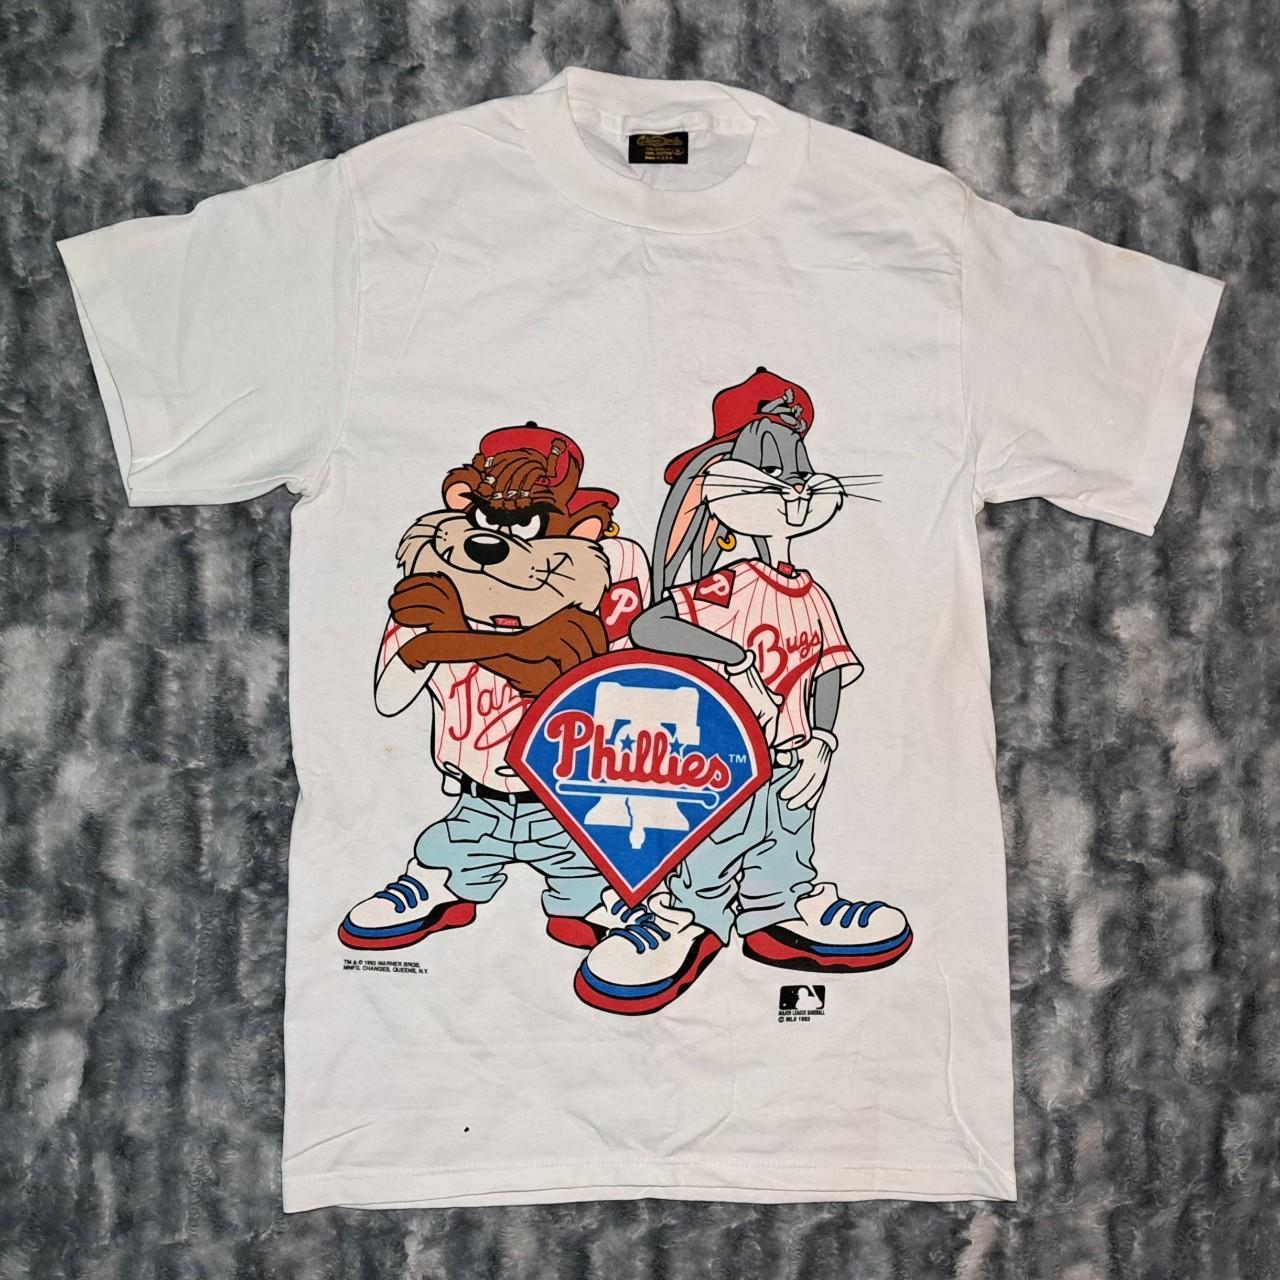 Vintage Texas Rangers Baseball Looney Tunes Taz 1991 - Depop